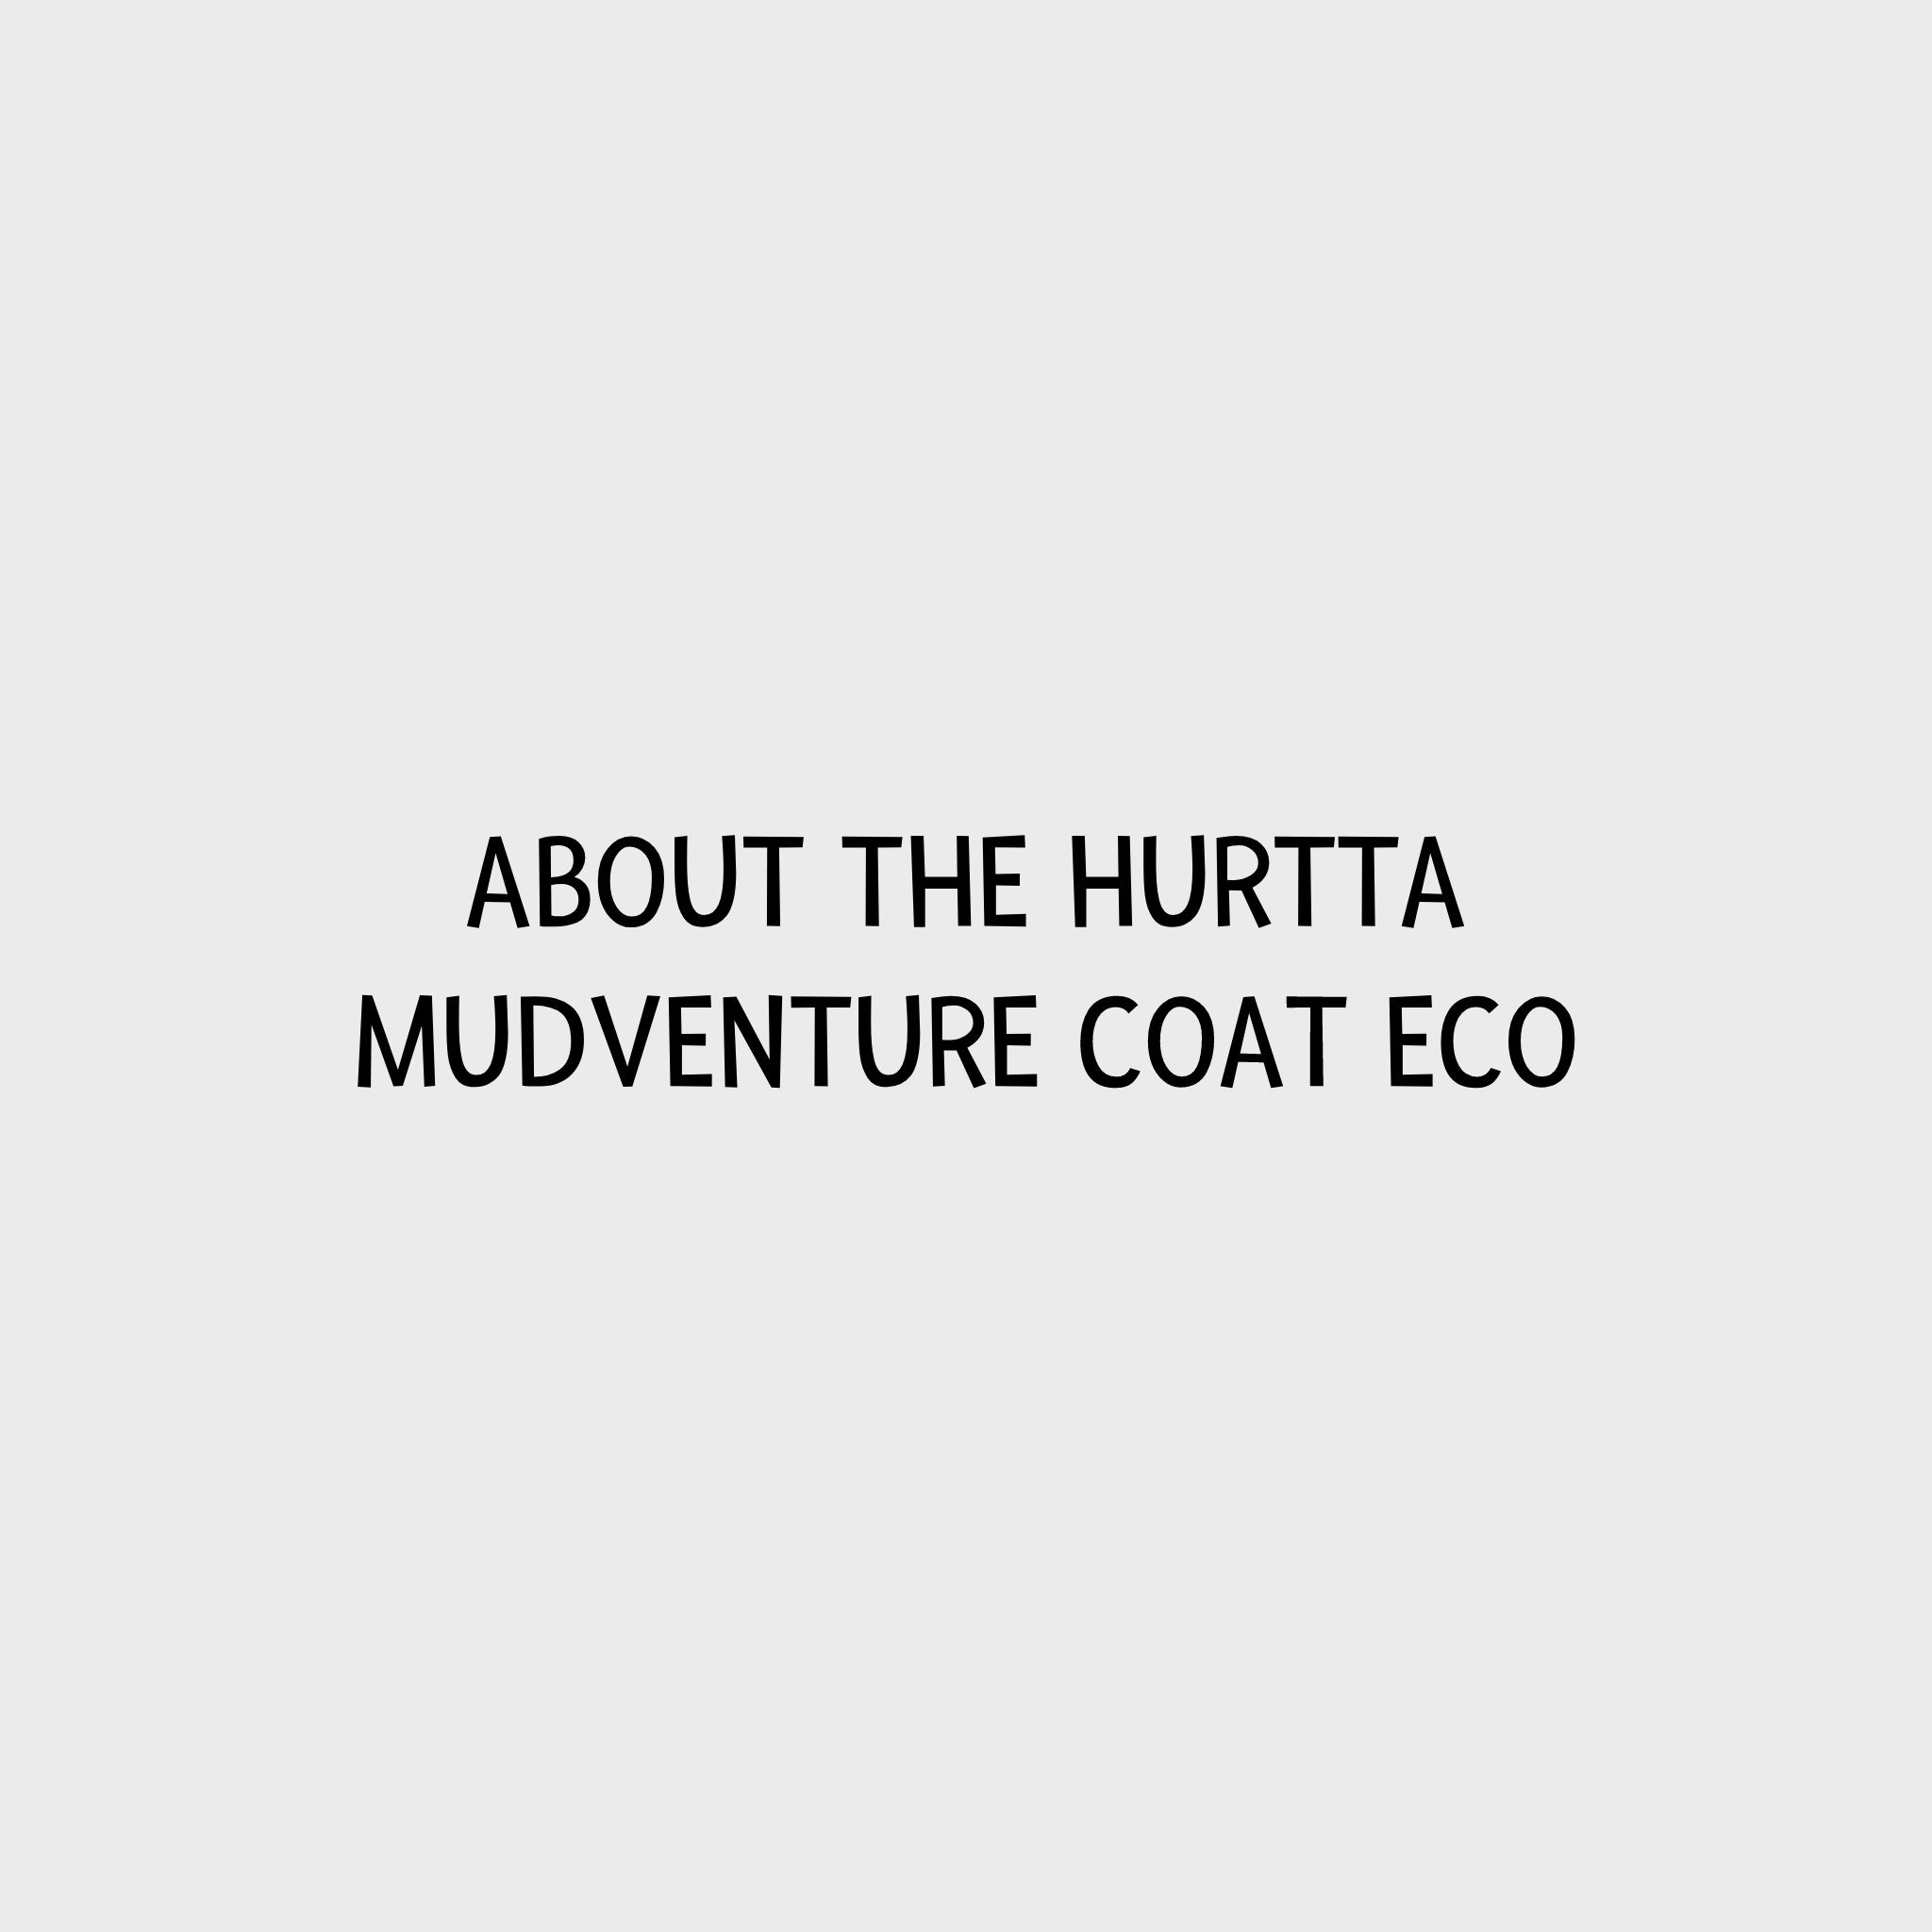 Video - Hurtta Mudventure Coat ECO